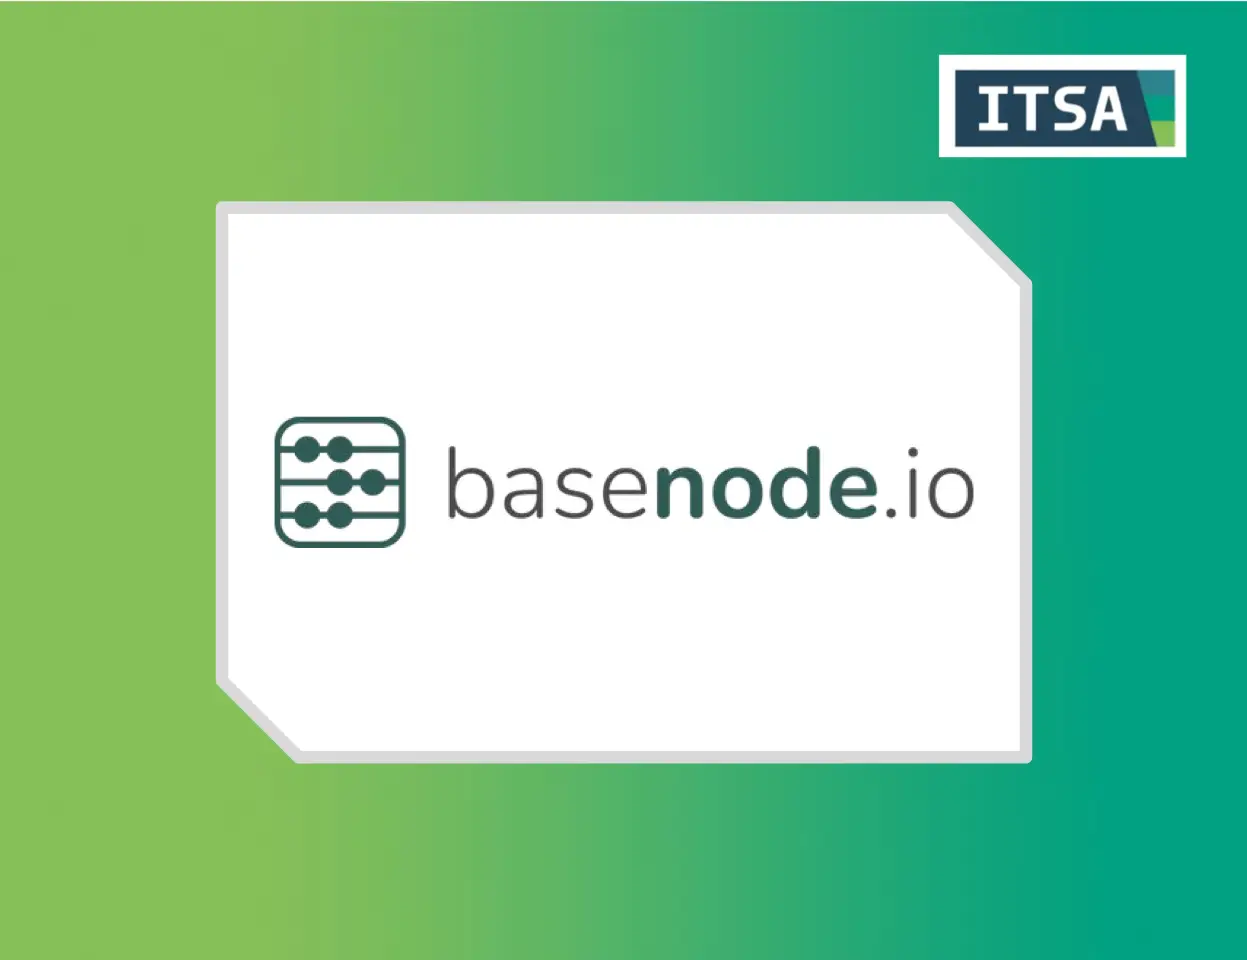 Basenode & ITSA Solutions